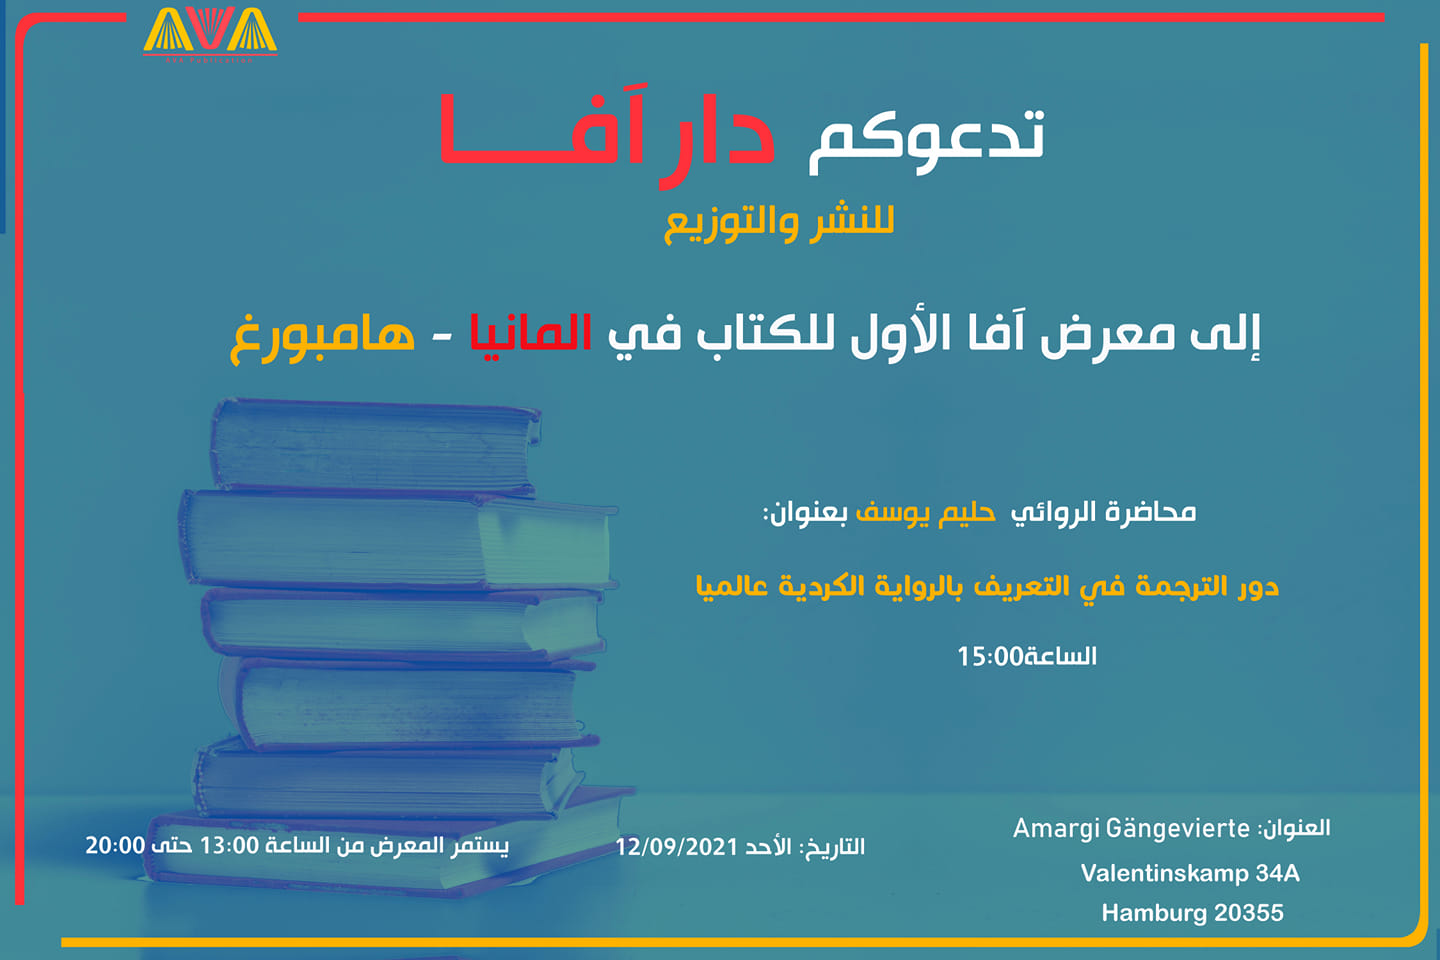 حليم يوسف في هامبورغ -12.09.2021- معرض الكتاب، حديث عن الأدب والترجمة والرواية وحفل توقيع الكتاب